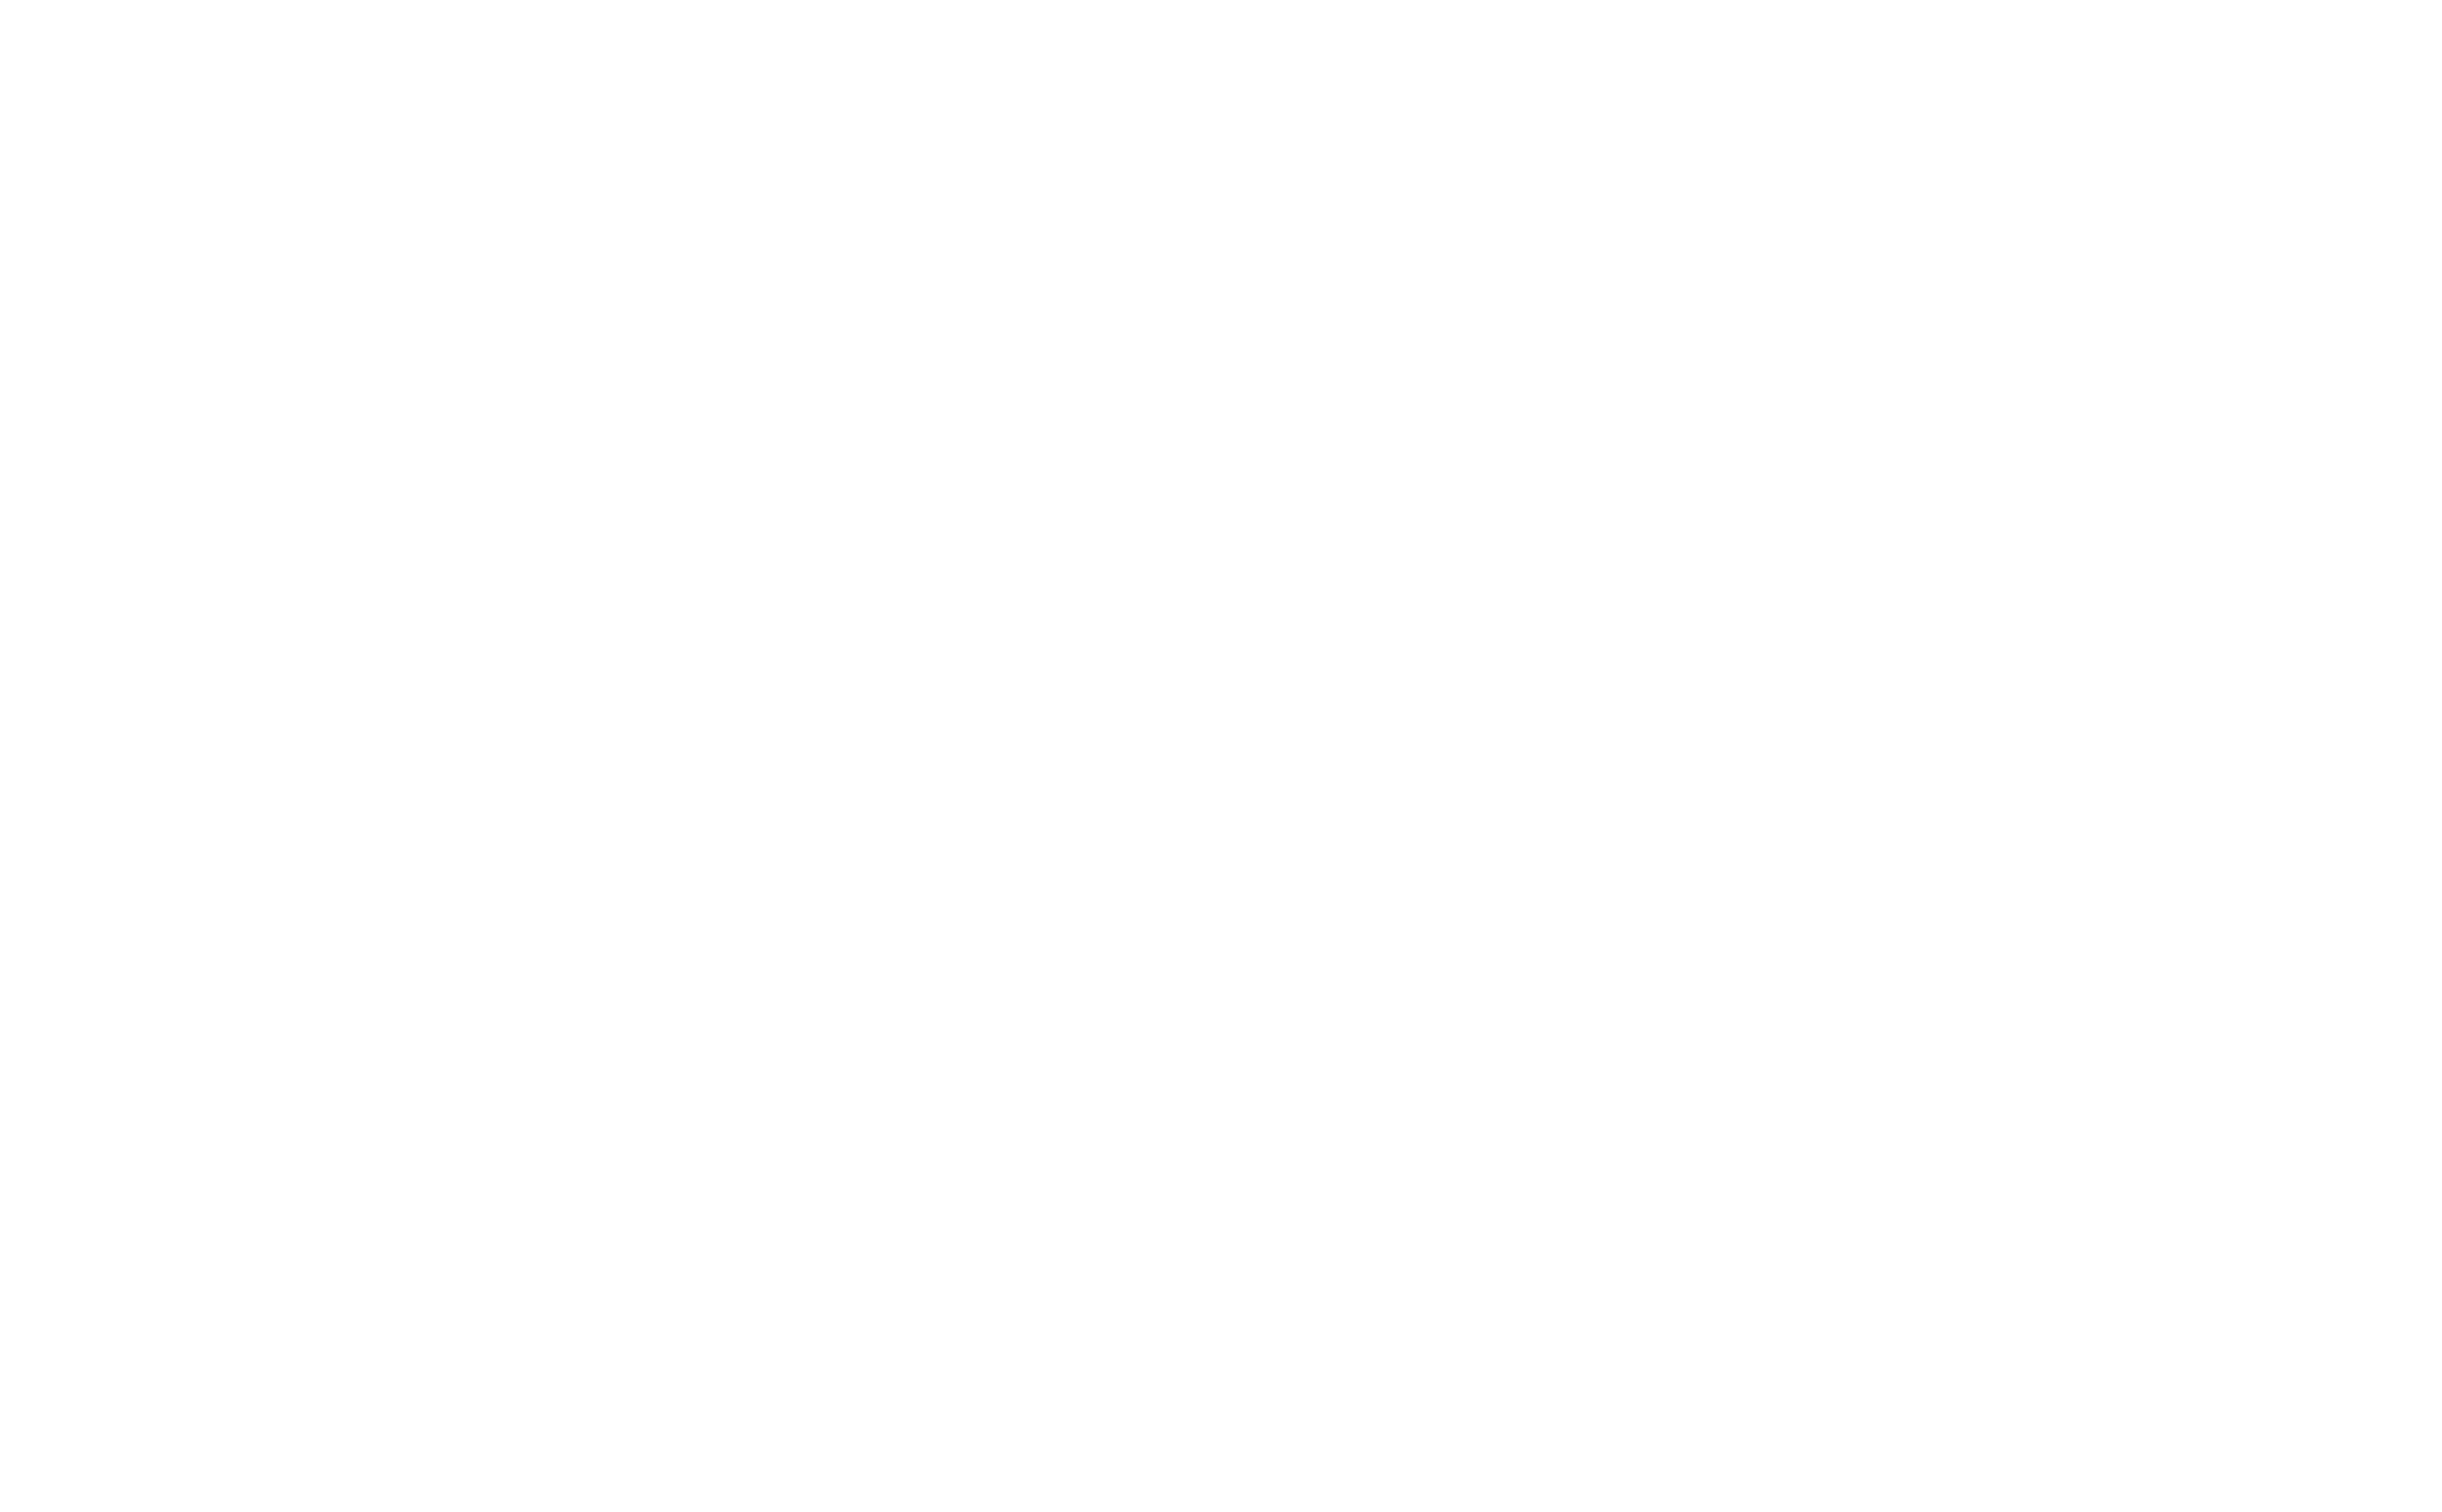 Procurement Australia